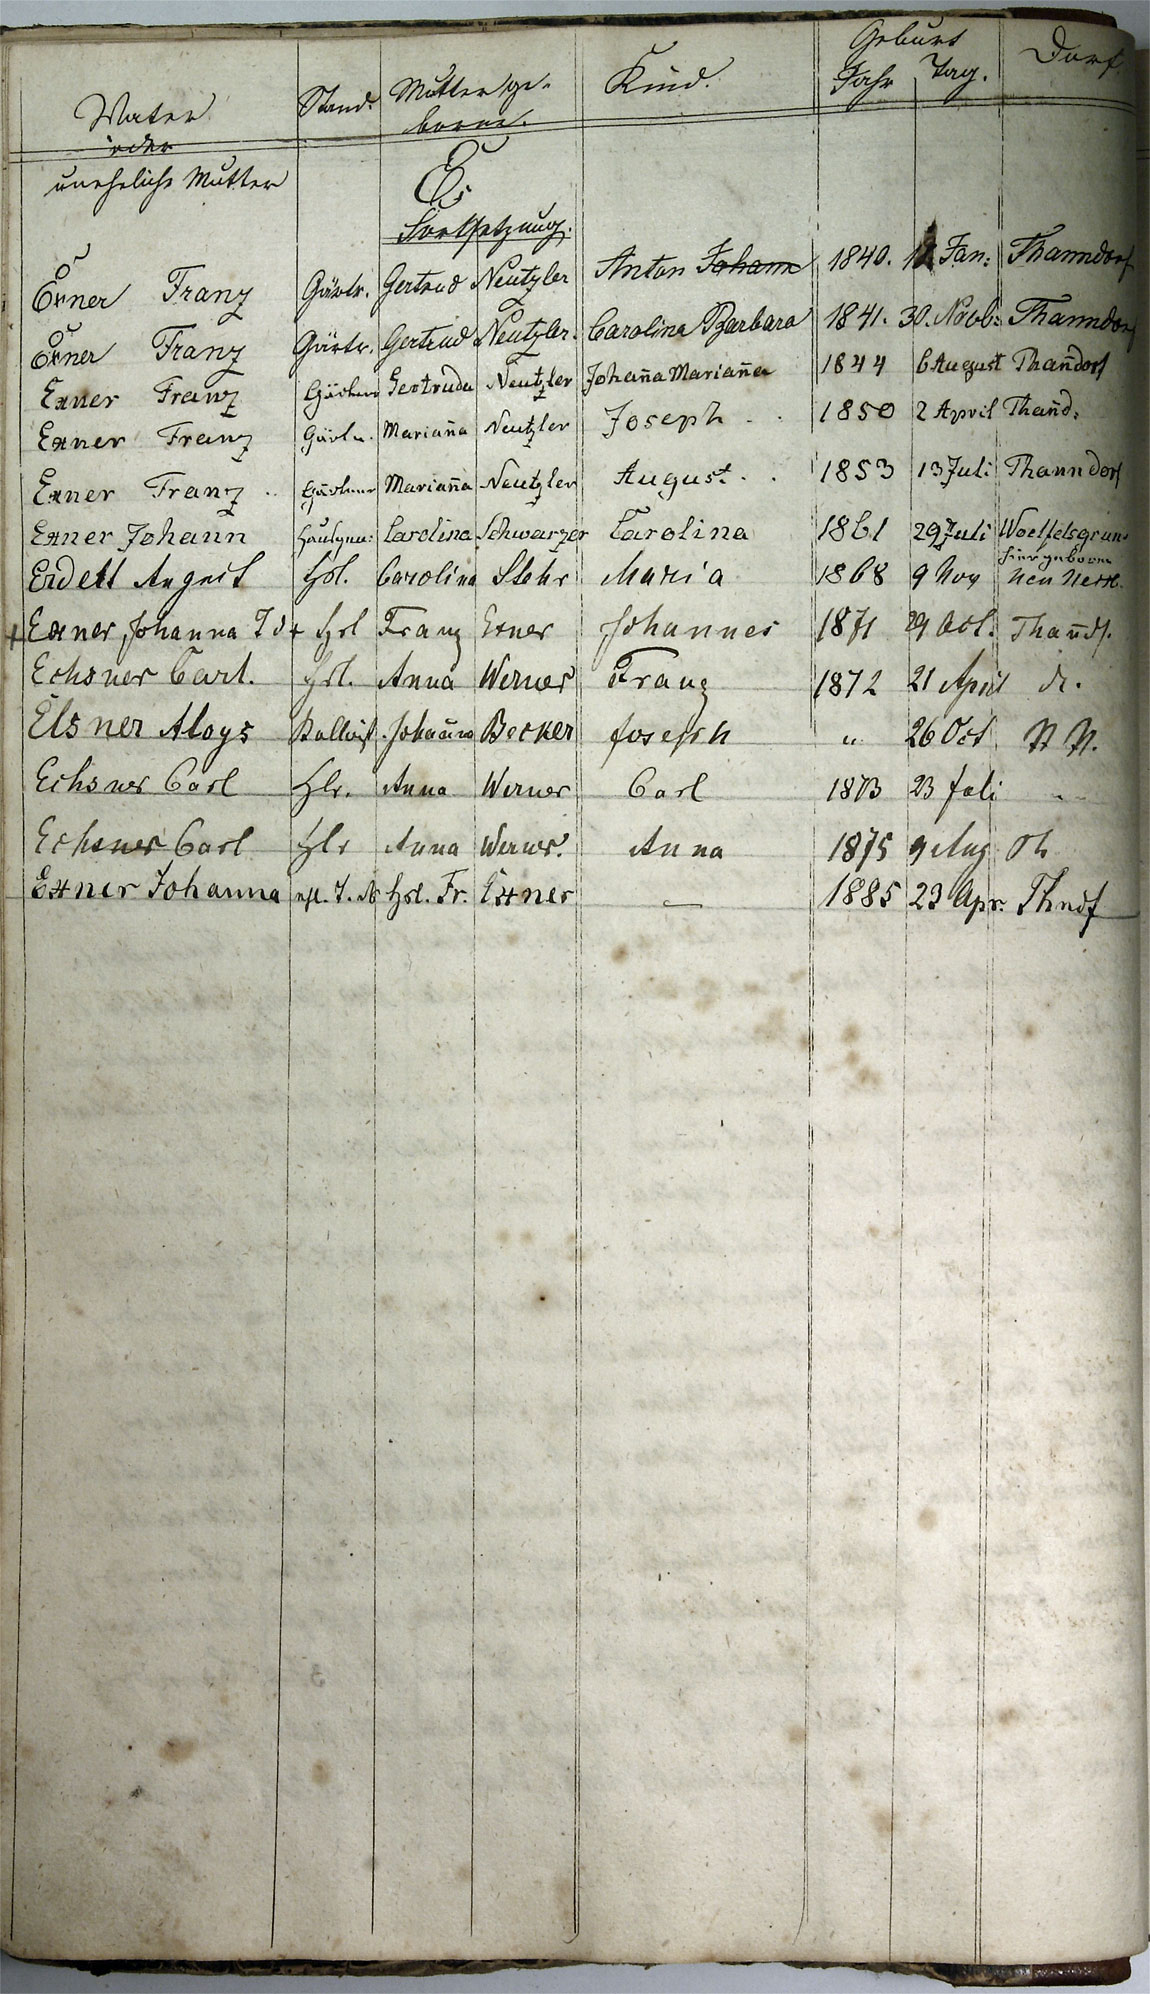 Taufregister 1770 - 1889 Seite 22